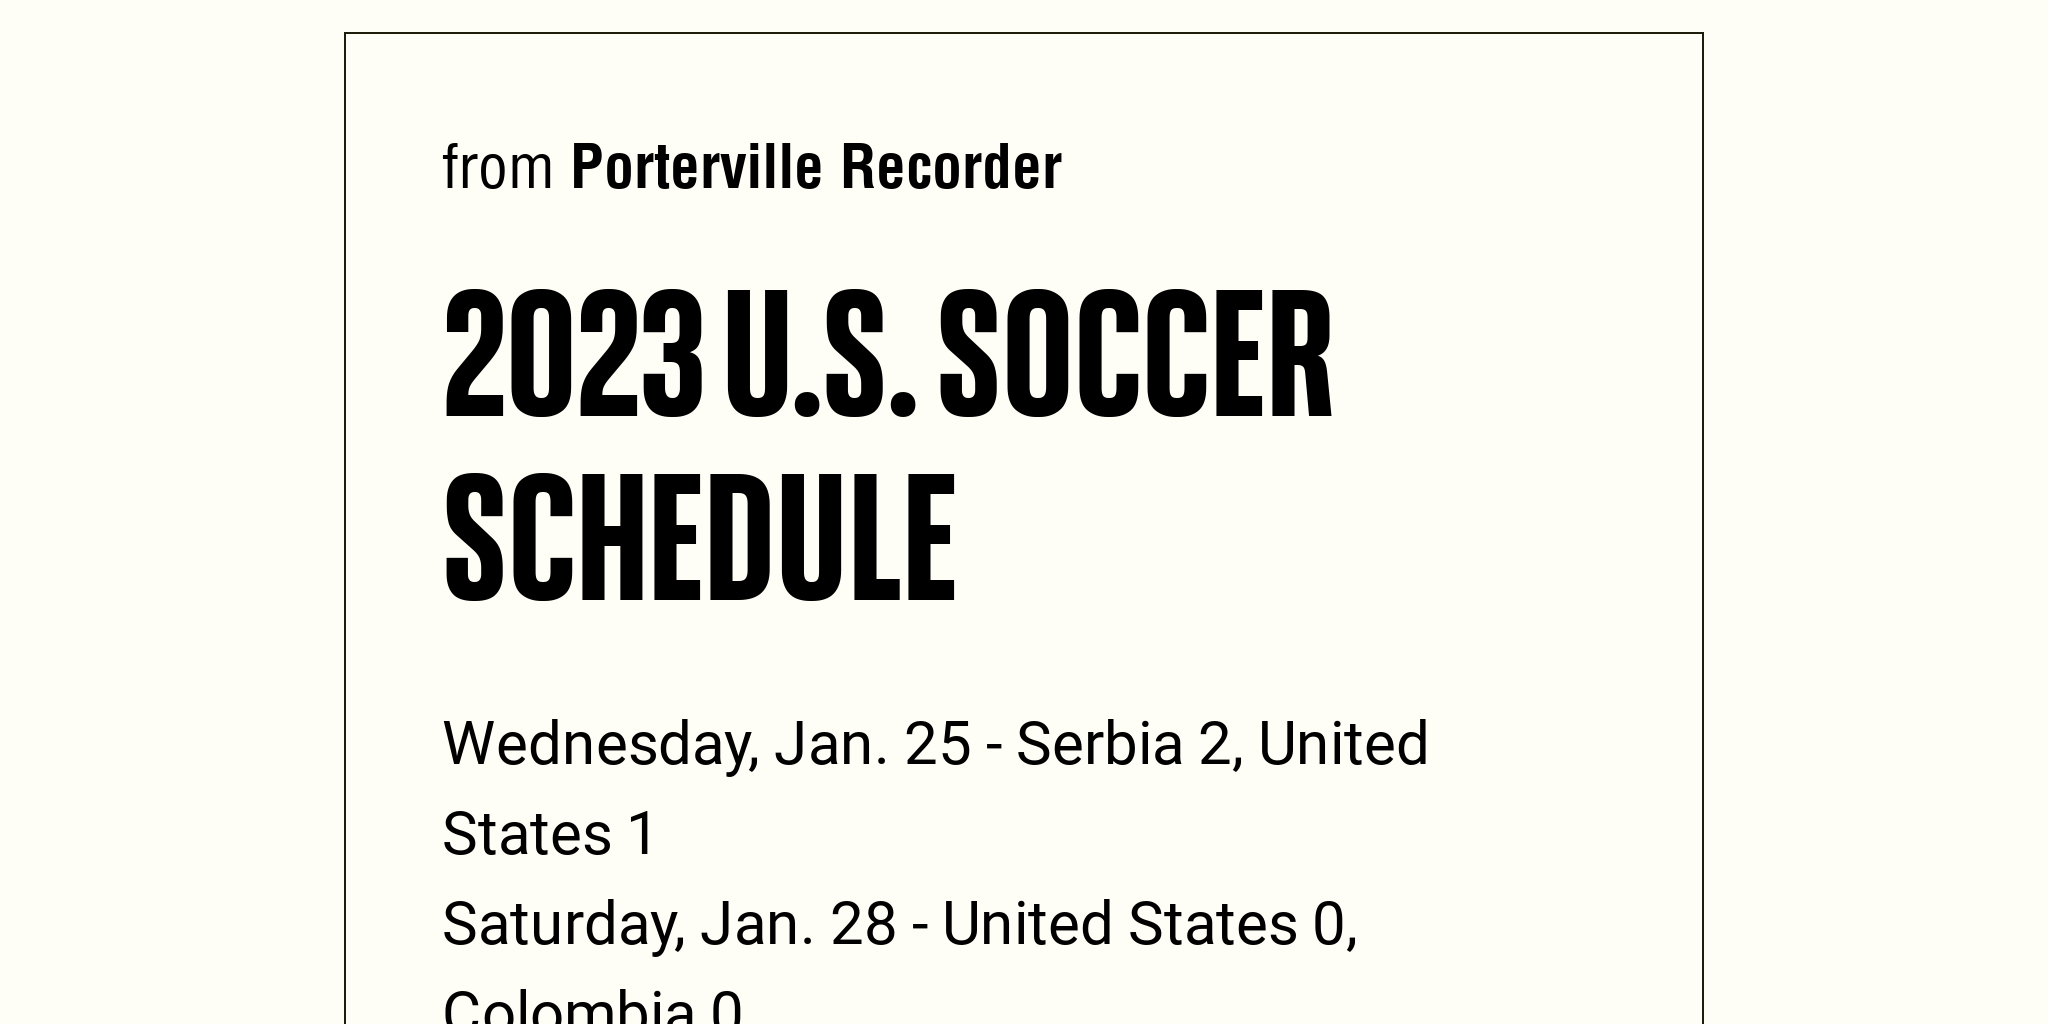 2023 U.S. Soccer Schedule Briefly